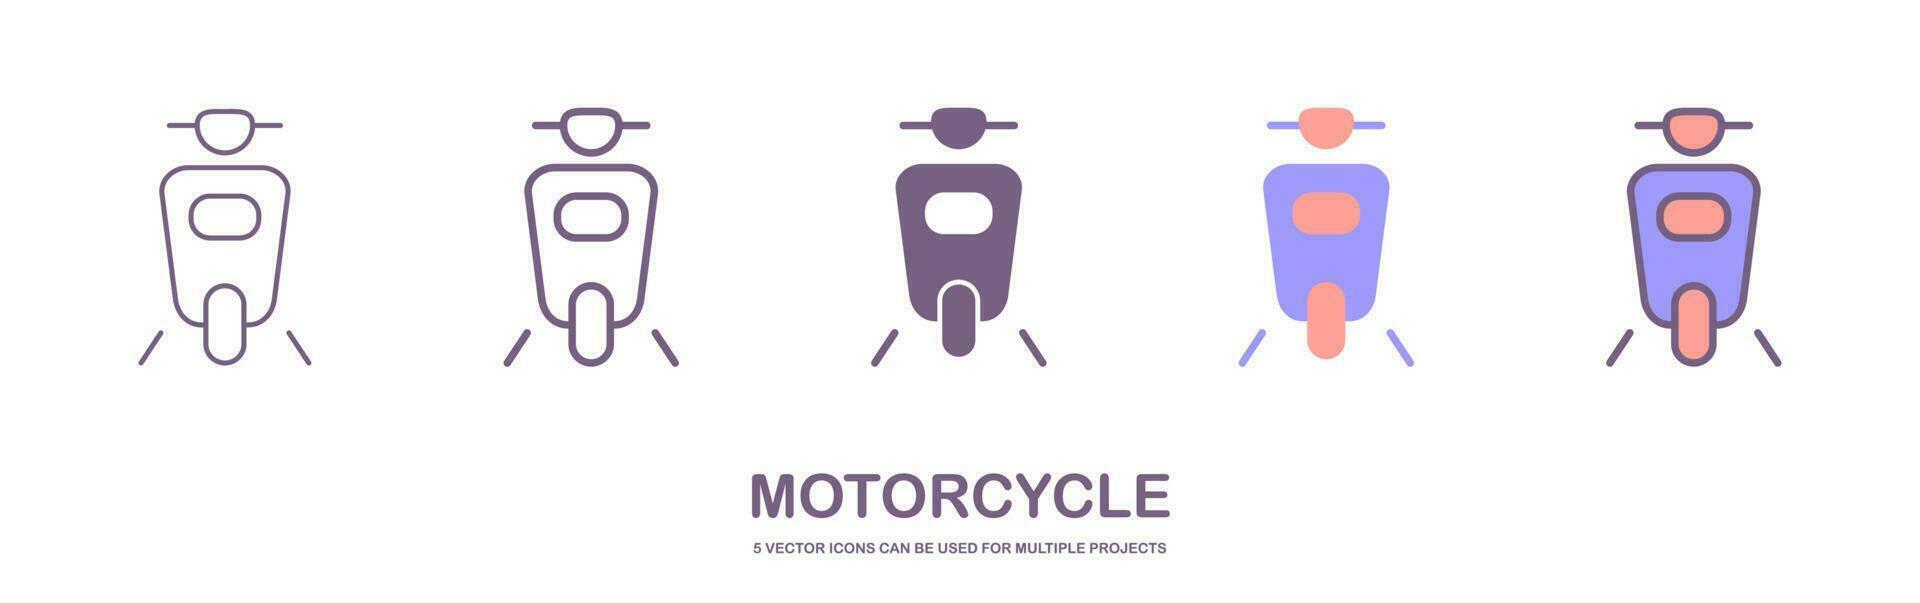 grande aislado motocicleta vector vistoso íconos colocar, plano ilustraciones de varios tipo motocicletas aislado en blanco antecedentes